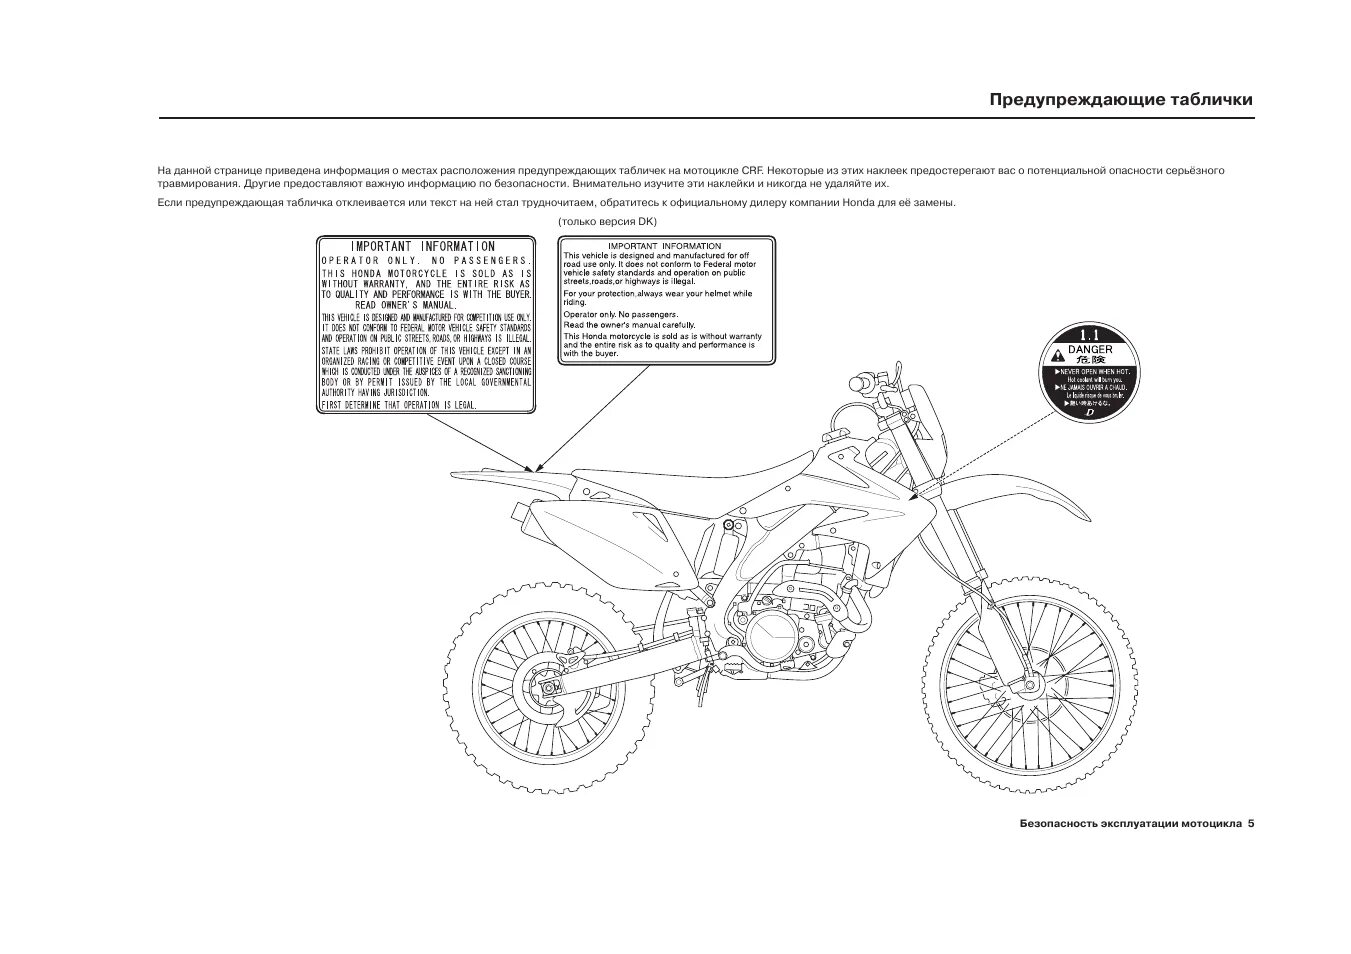 Питбайк правила. Инструкция для питбайка 125 Велс. Инструкция мотоцикла. Руководство пользователя мото. Схема мотоцикла BSE PH.